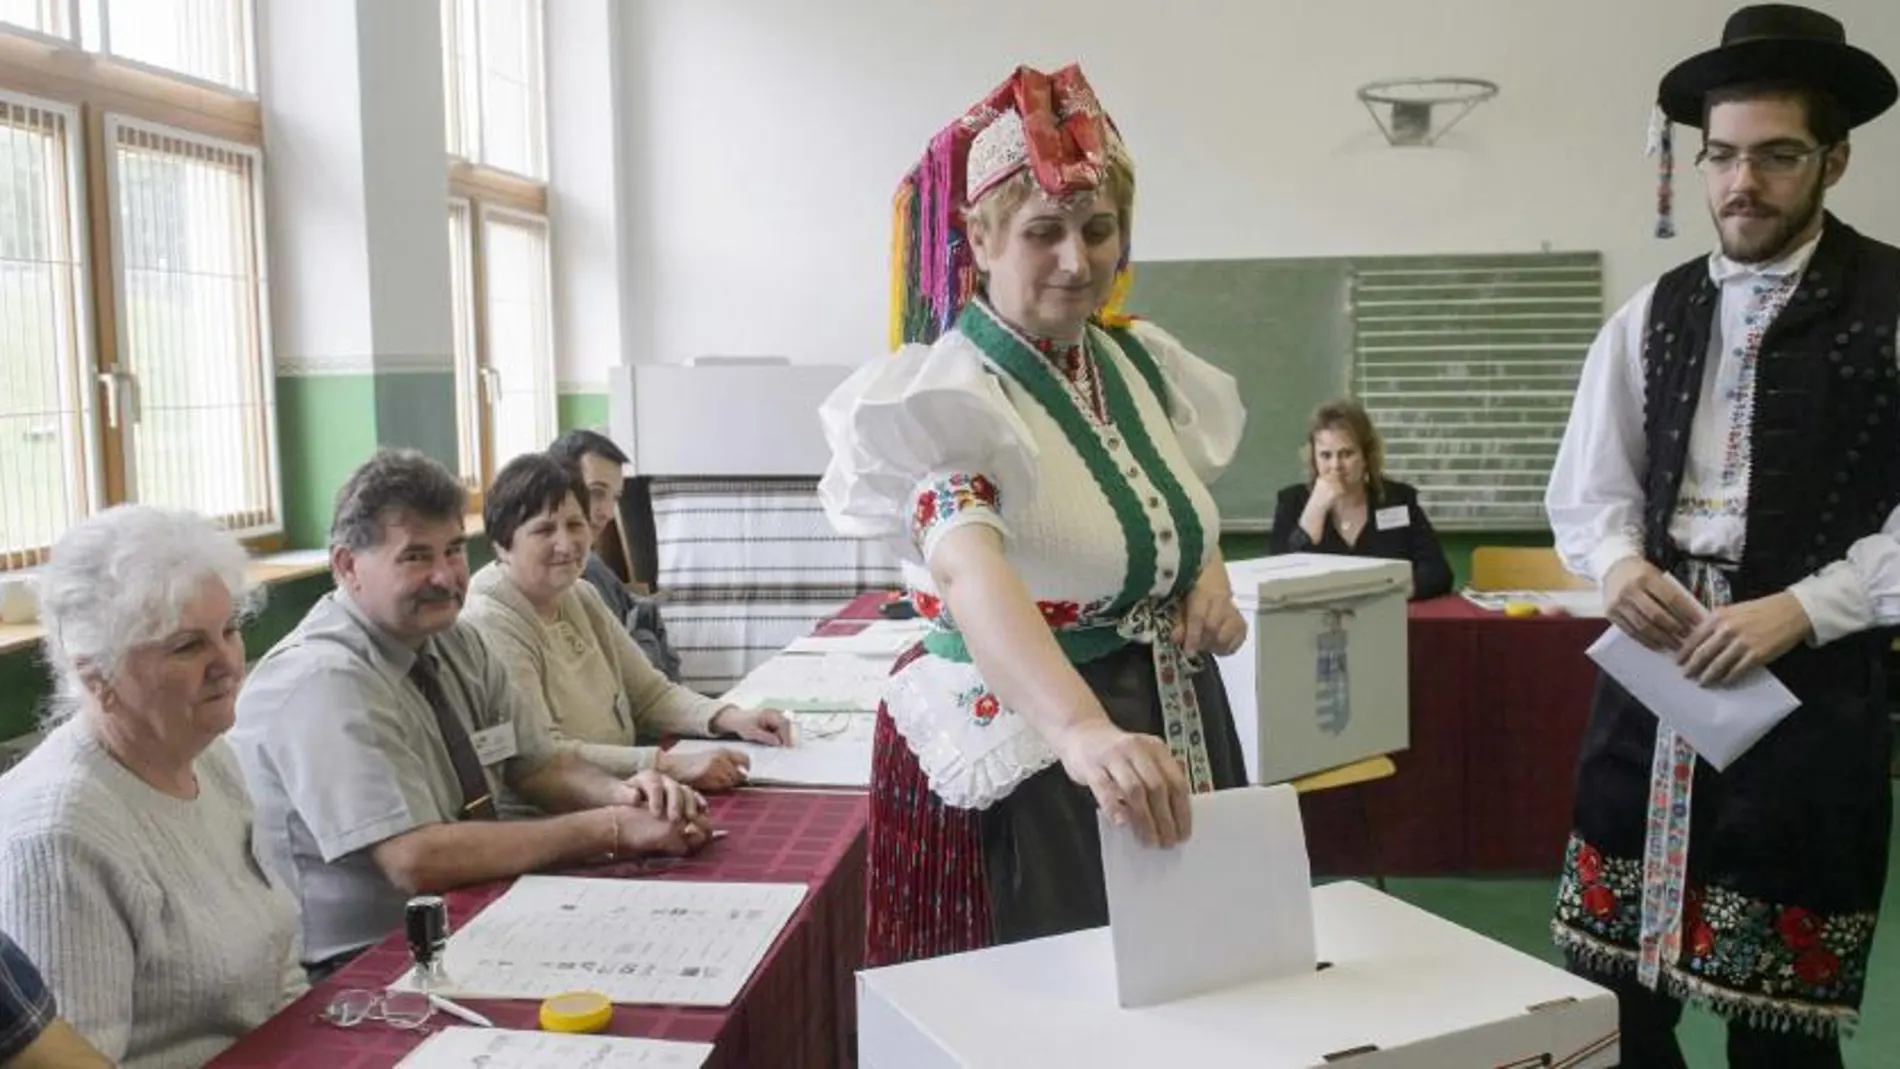 Una pareja de Holloko (Hungría), ataviados con trajes regionales, votan en un colegio electoral.